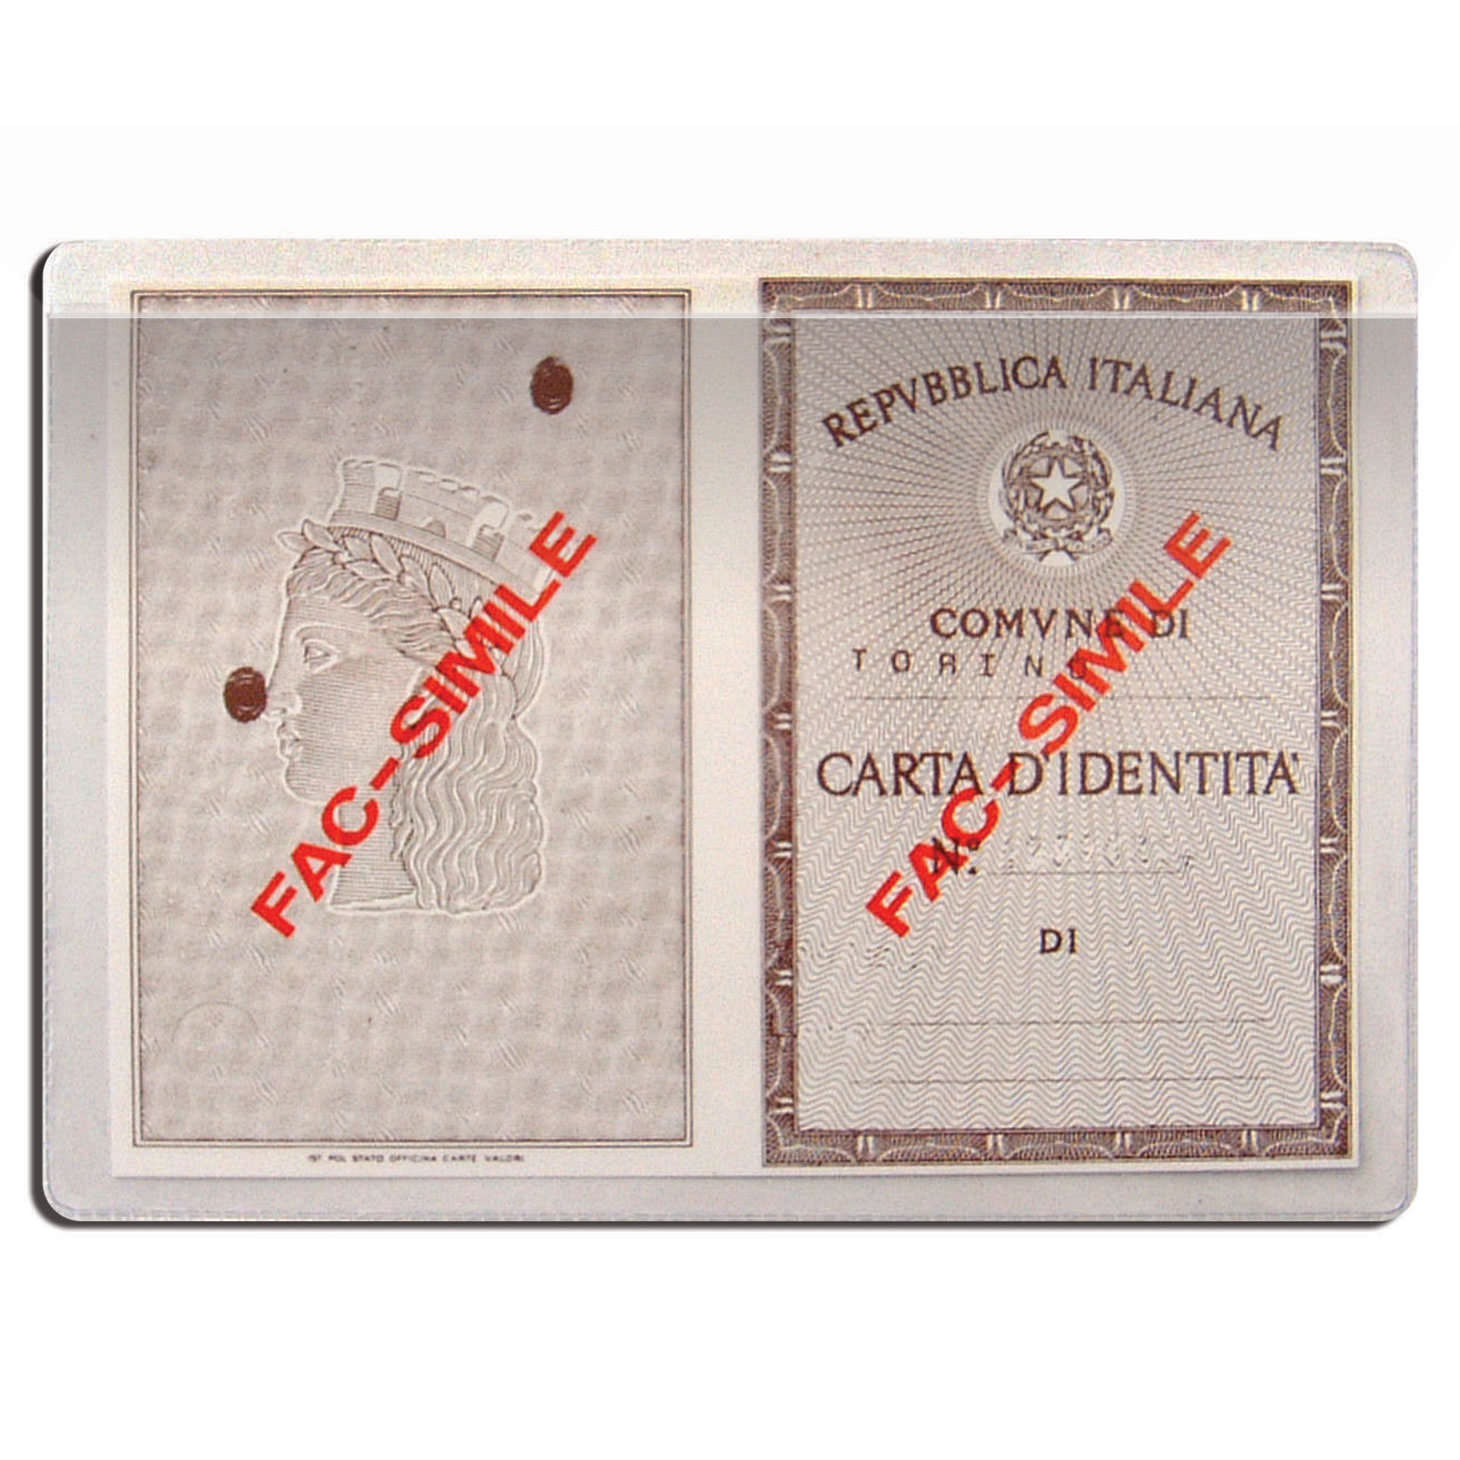 1016 Porta Carta Didentita Cristal A Tasca Alplast Italia Lavorazione Materie Plastiche Elettrosaldate